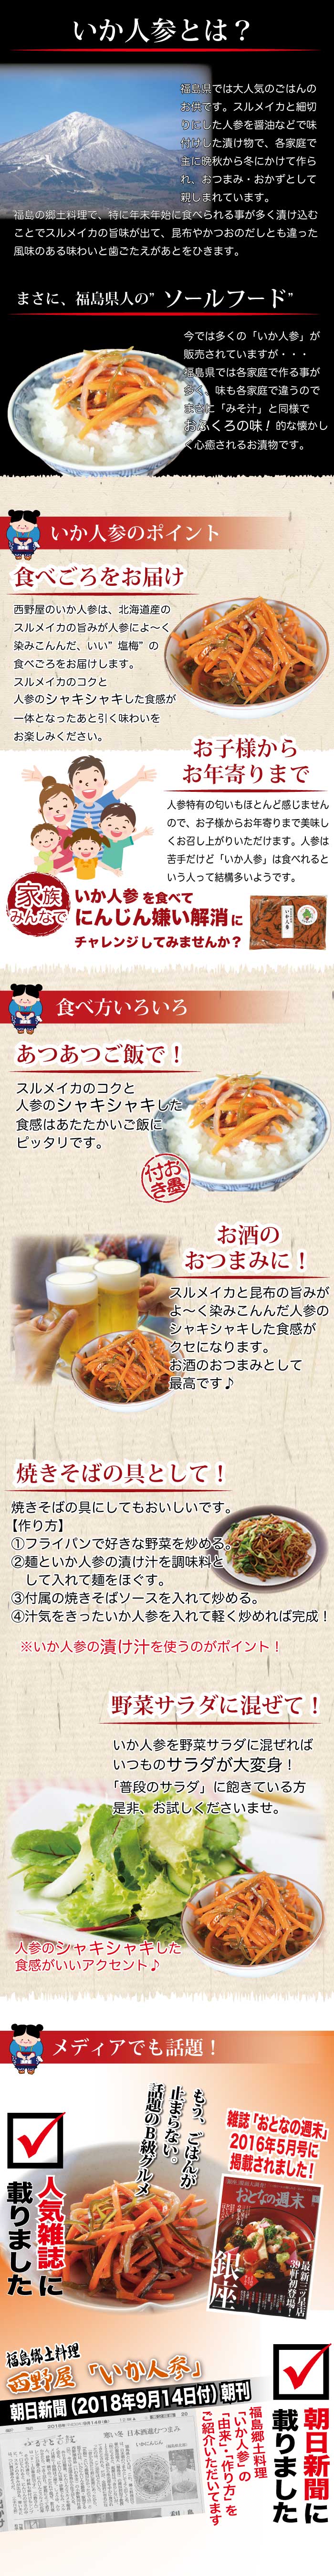 漬物 まるで白いキムチ「松前白菜漬450g」福島 応援 FP